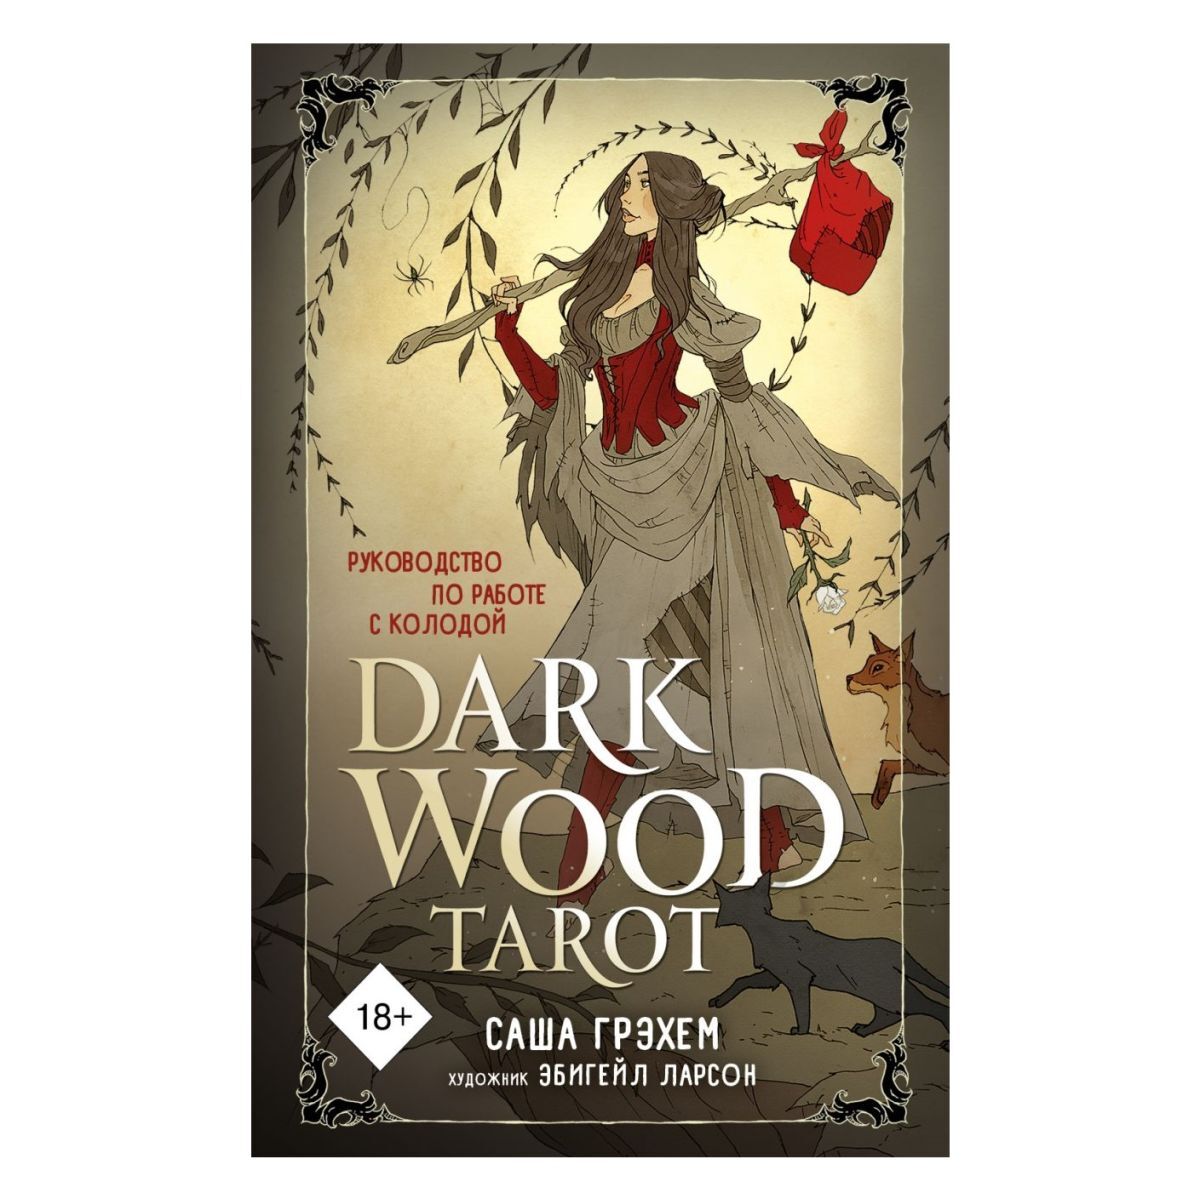 

Таро Темного леса (Dark Wood Tarot)